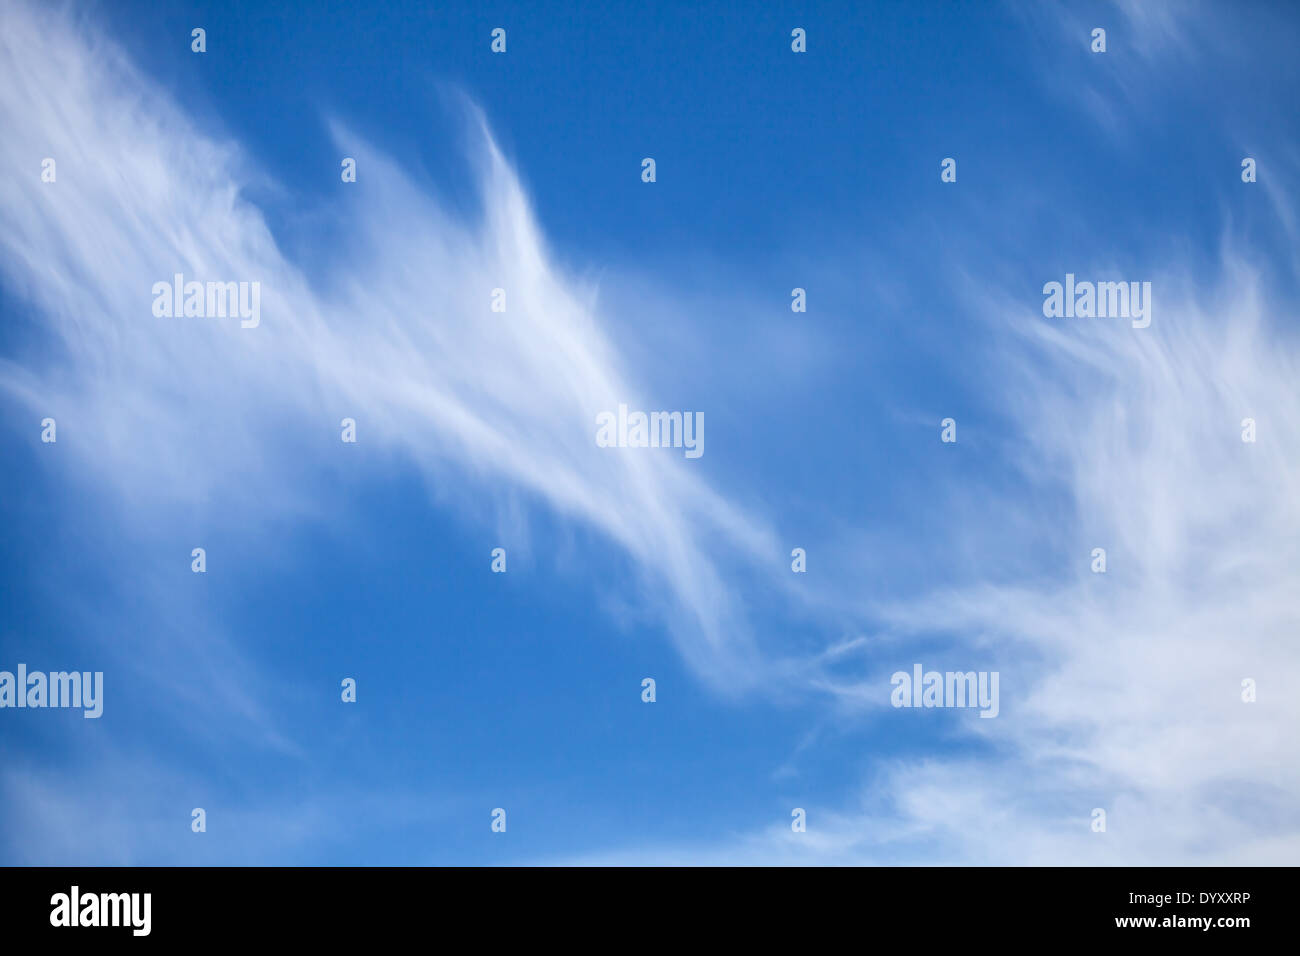 Natürlichen hellen blauen Wolkenhimmel Hintergrundtextur Stockfoto